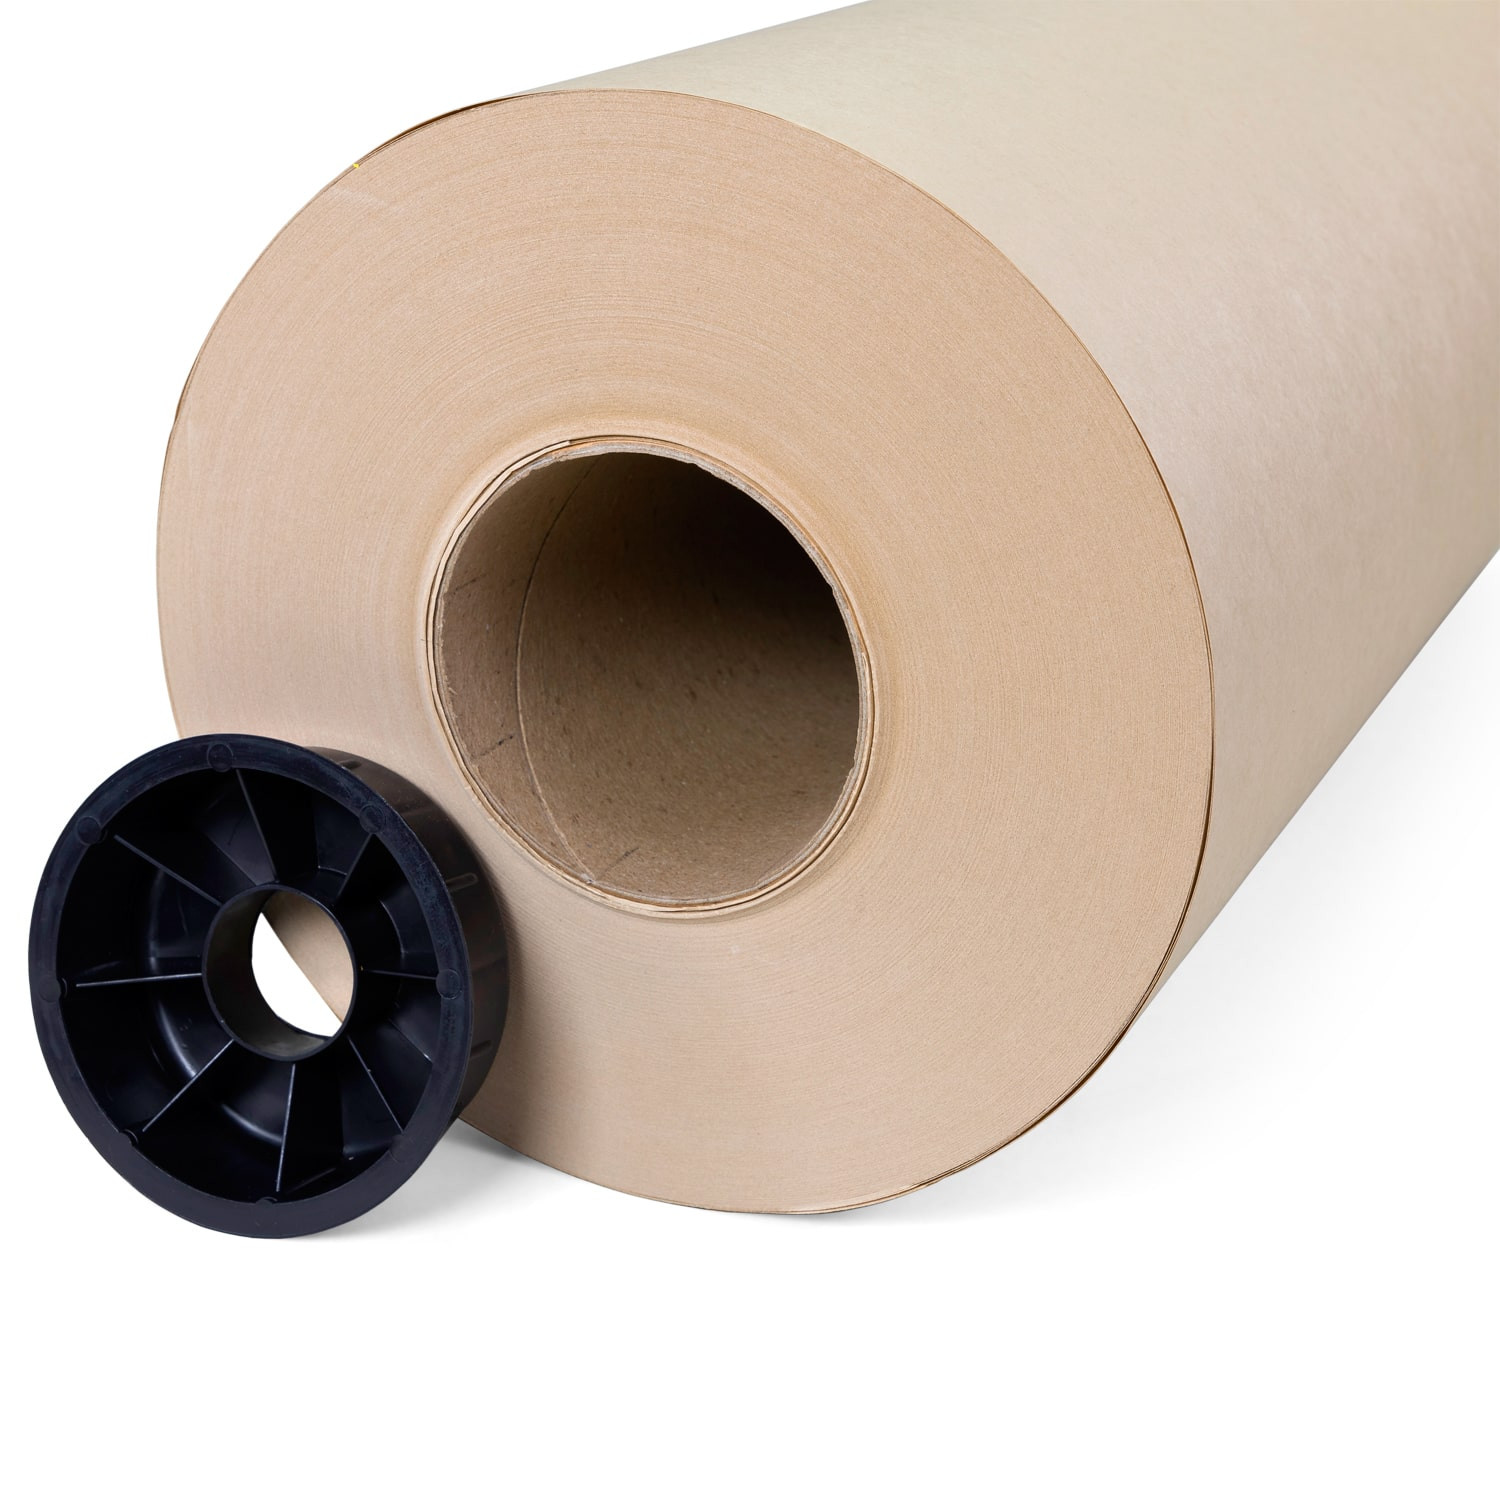 18 x 720' Brown Kraft Paper Roll, 50 lbs buy in stock in U.S. in IDL  Packaging